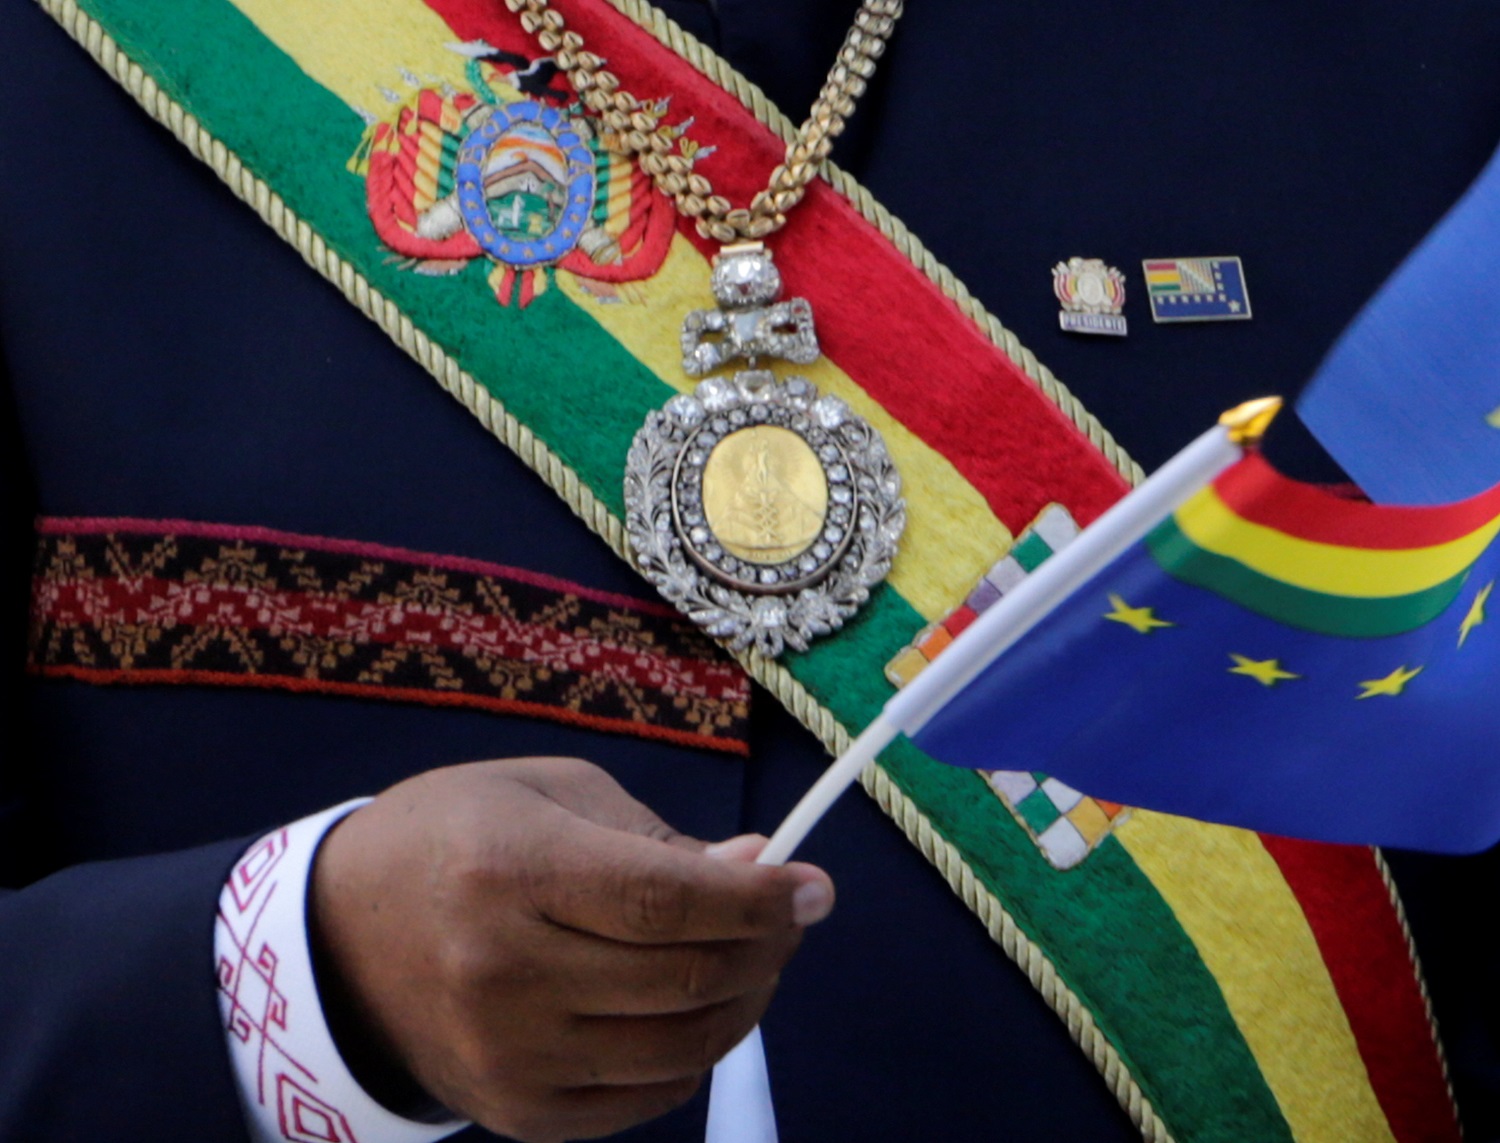 Armas, cannabis y psiquiátricos: Las polémicas promesas electorales en Bolivia